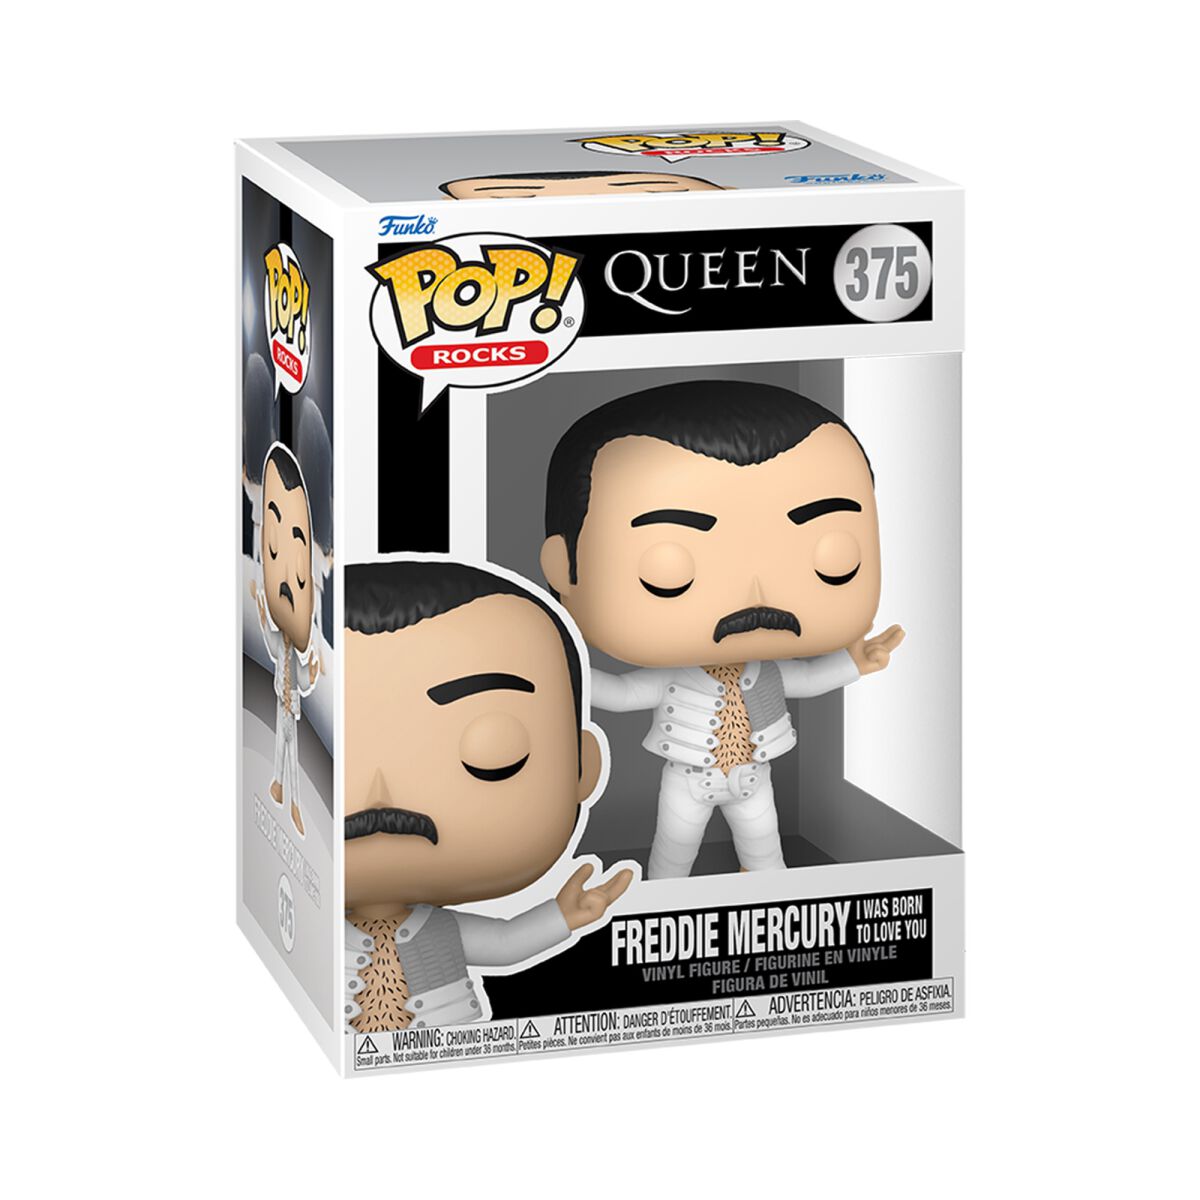 Queen - Freddie Mercury Rocks! (I was born to love You) Vinyl Figur 375 - Funko Pop! Figur - Funko Shop Deutschland - Lizenziertes Merchandise!